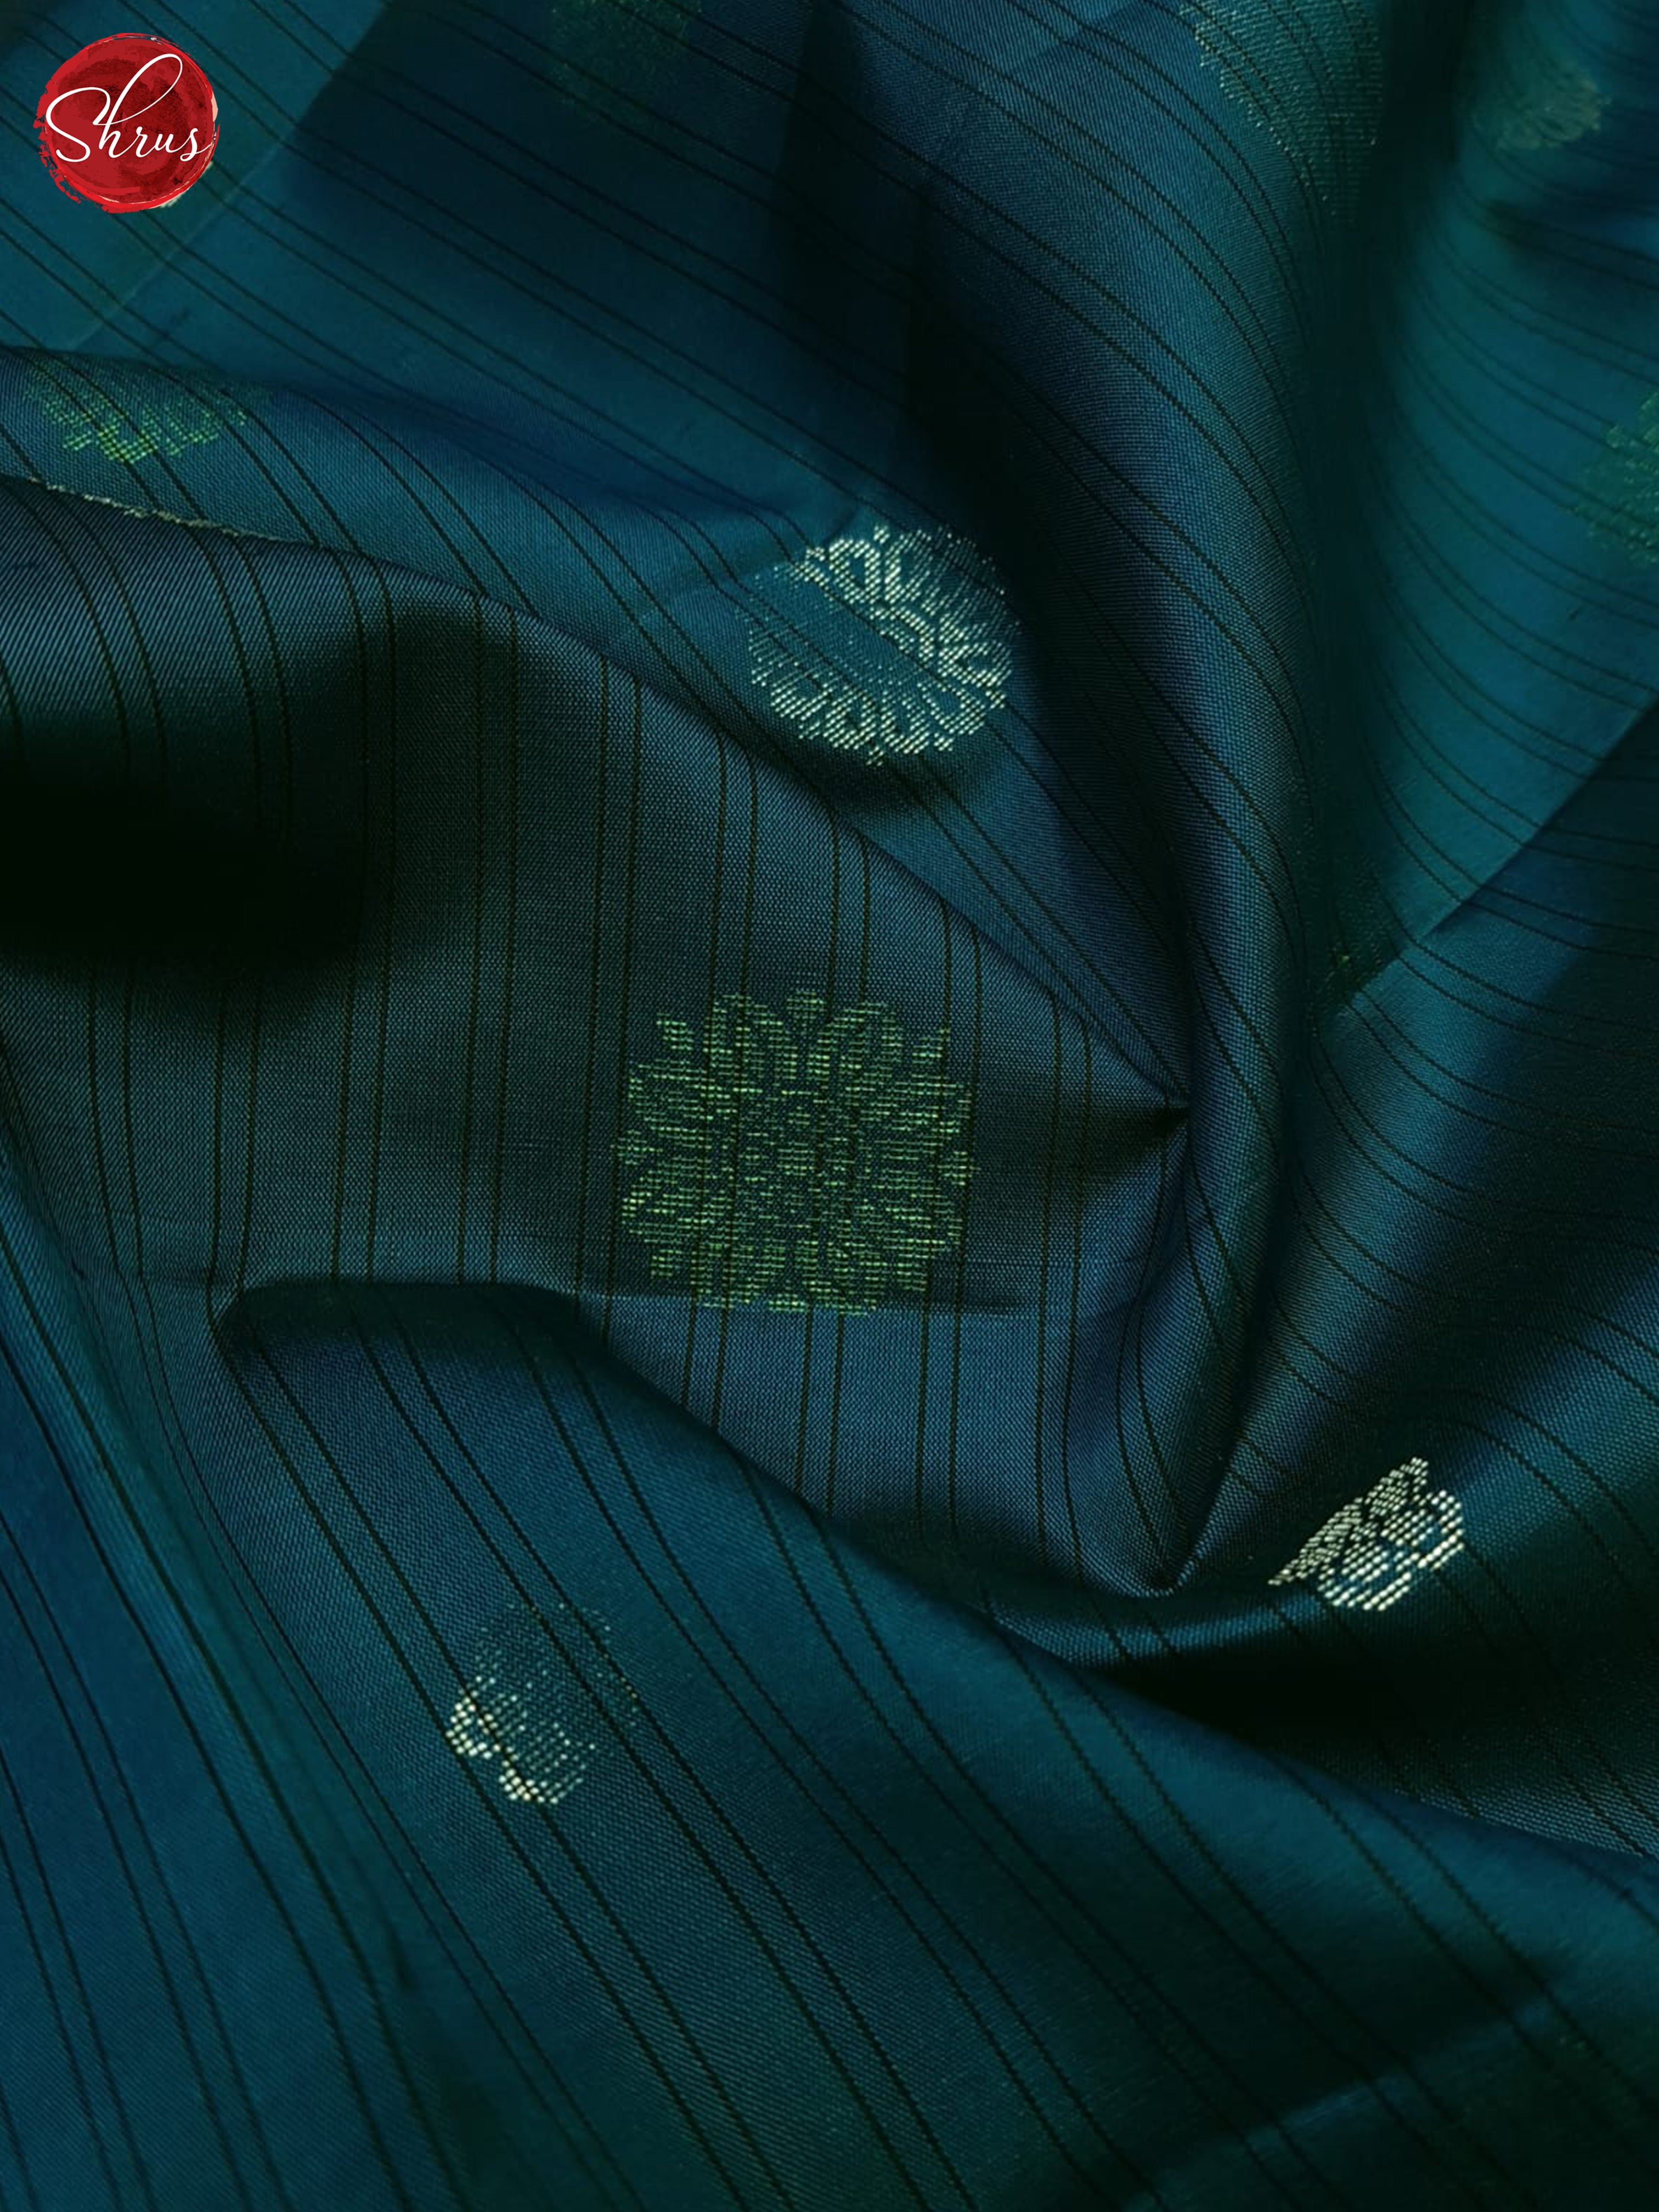 Blue And Black- Soft Silk Saree - Shop on ShrusEternity.com